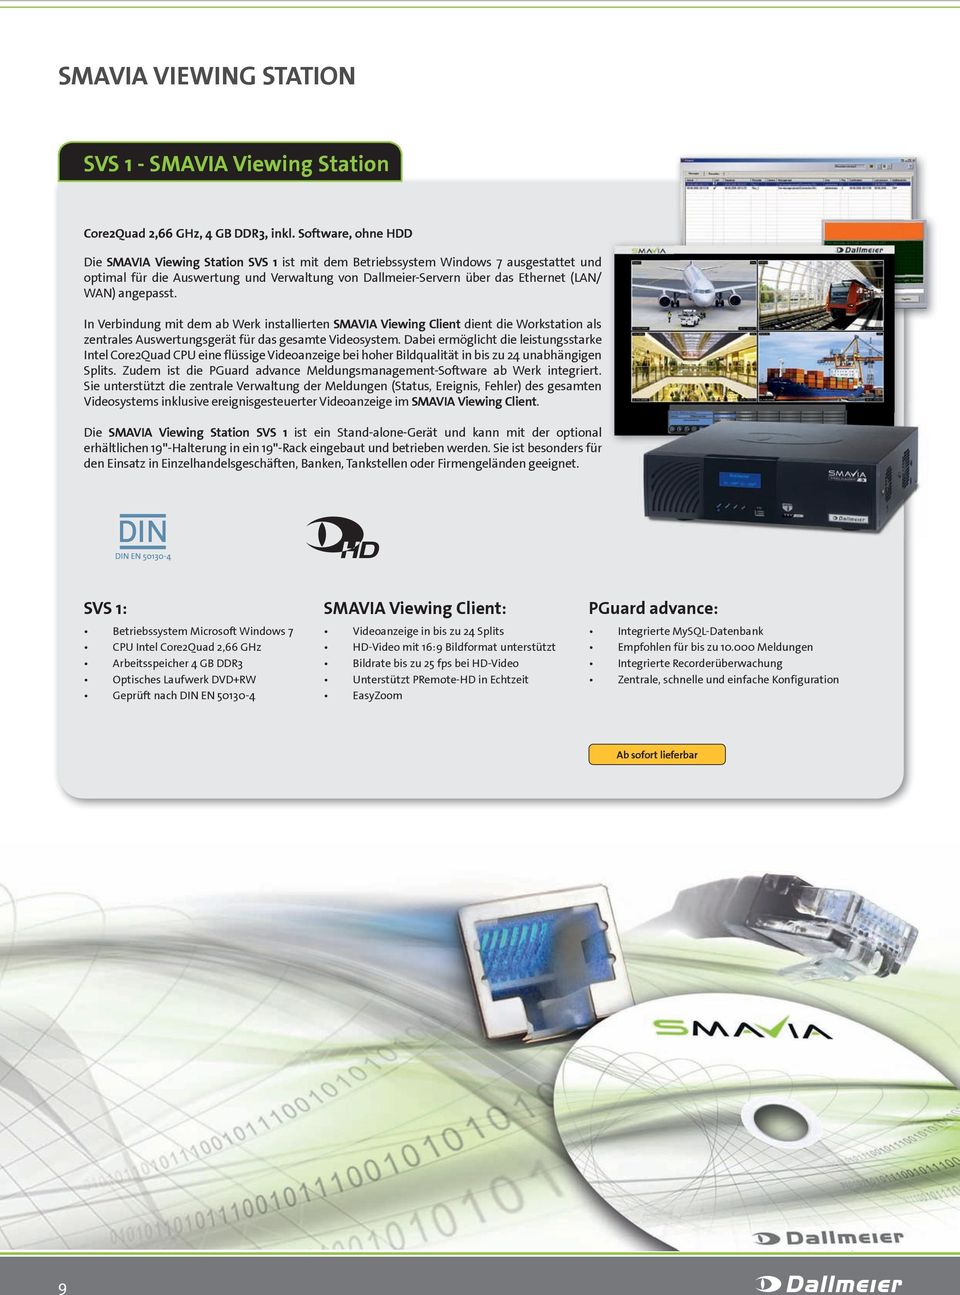 angepasst. In Verbindung mit dem ab Werk installierten SMAVIA Viewing Client dient die Workstation als zentrales Auswertungsgerät für das gesamte Videosystem.